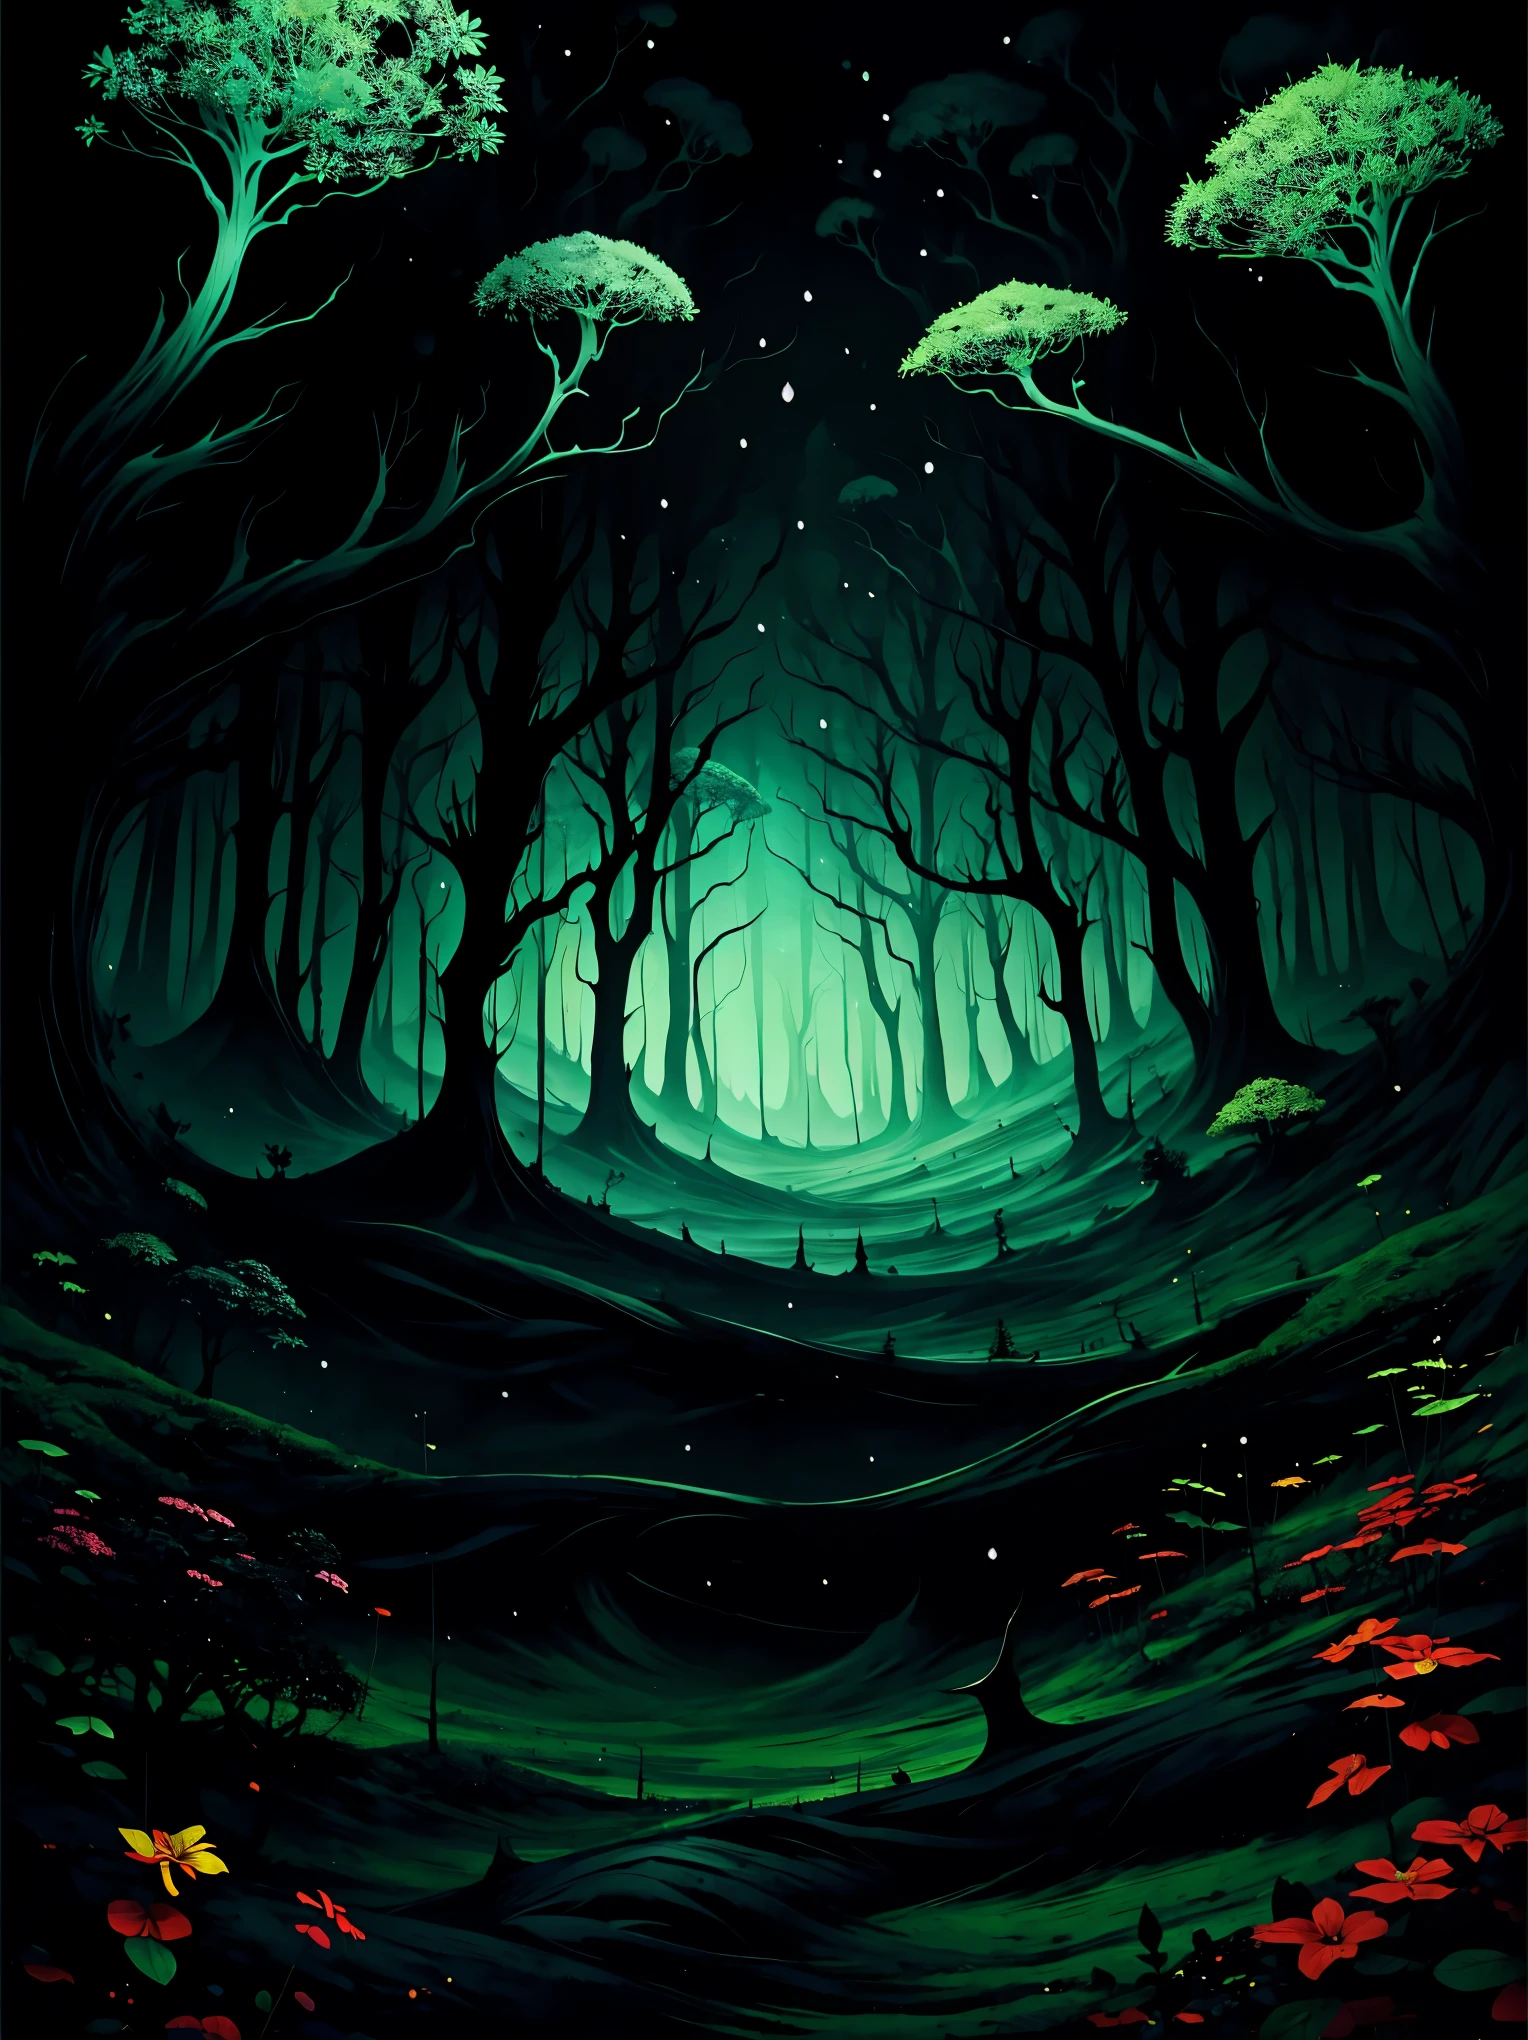 埃多布恐怖风景, 没人, 闹鬼的黑森林